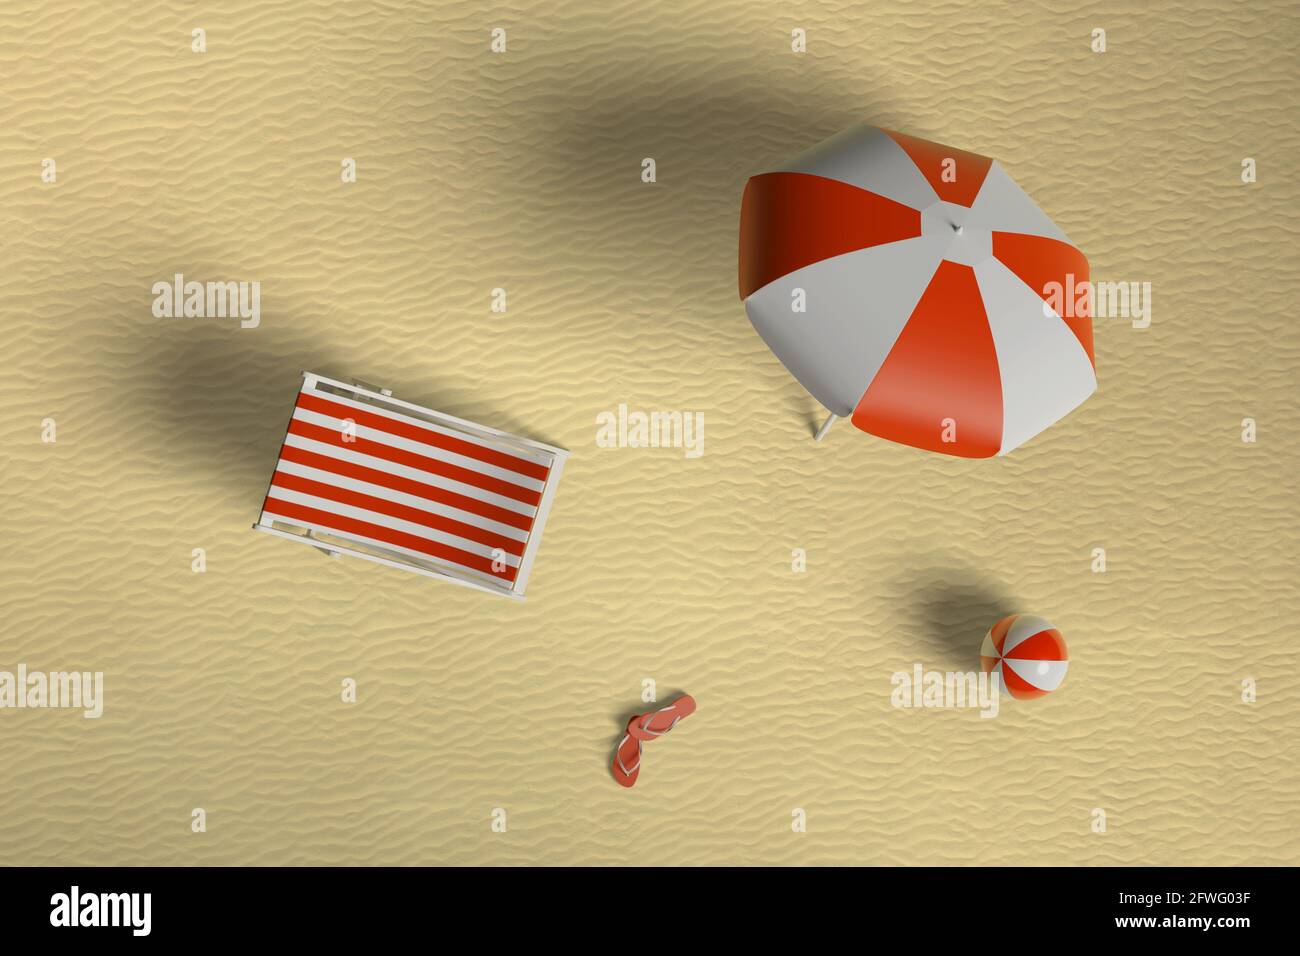 Blick von oben auf Sonnenschirm, Liegestuhl, Ball und zwei Flip Flops am Strand. 3d-Illustration. Stockfoto